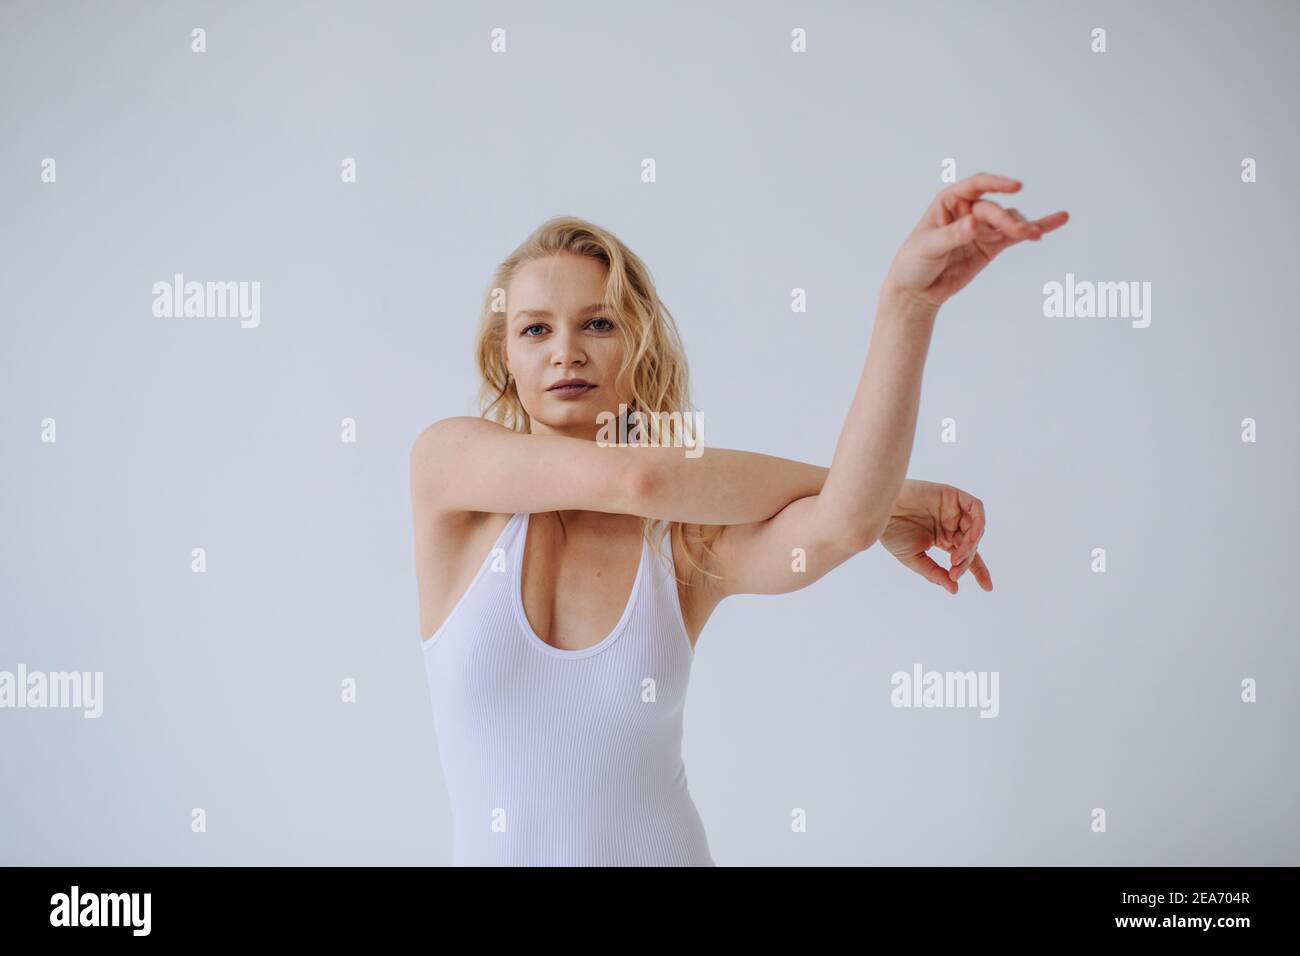 Gimnasta femenina en un estirado de leboard blanco Foto de stock